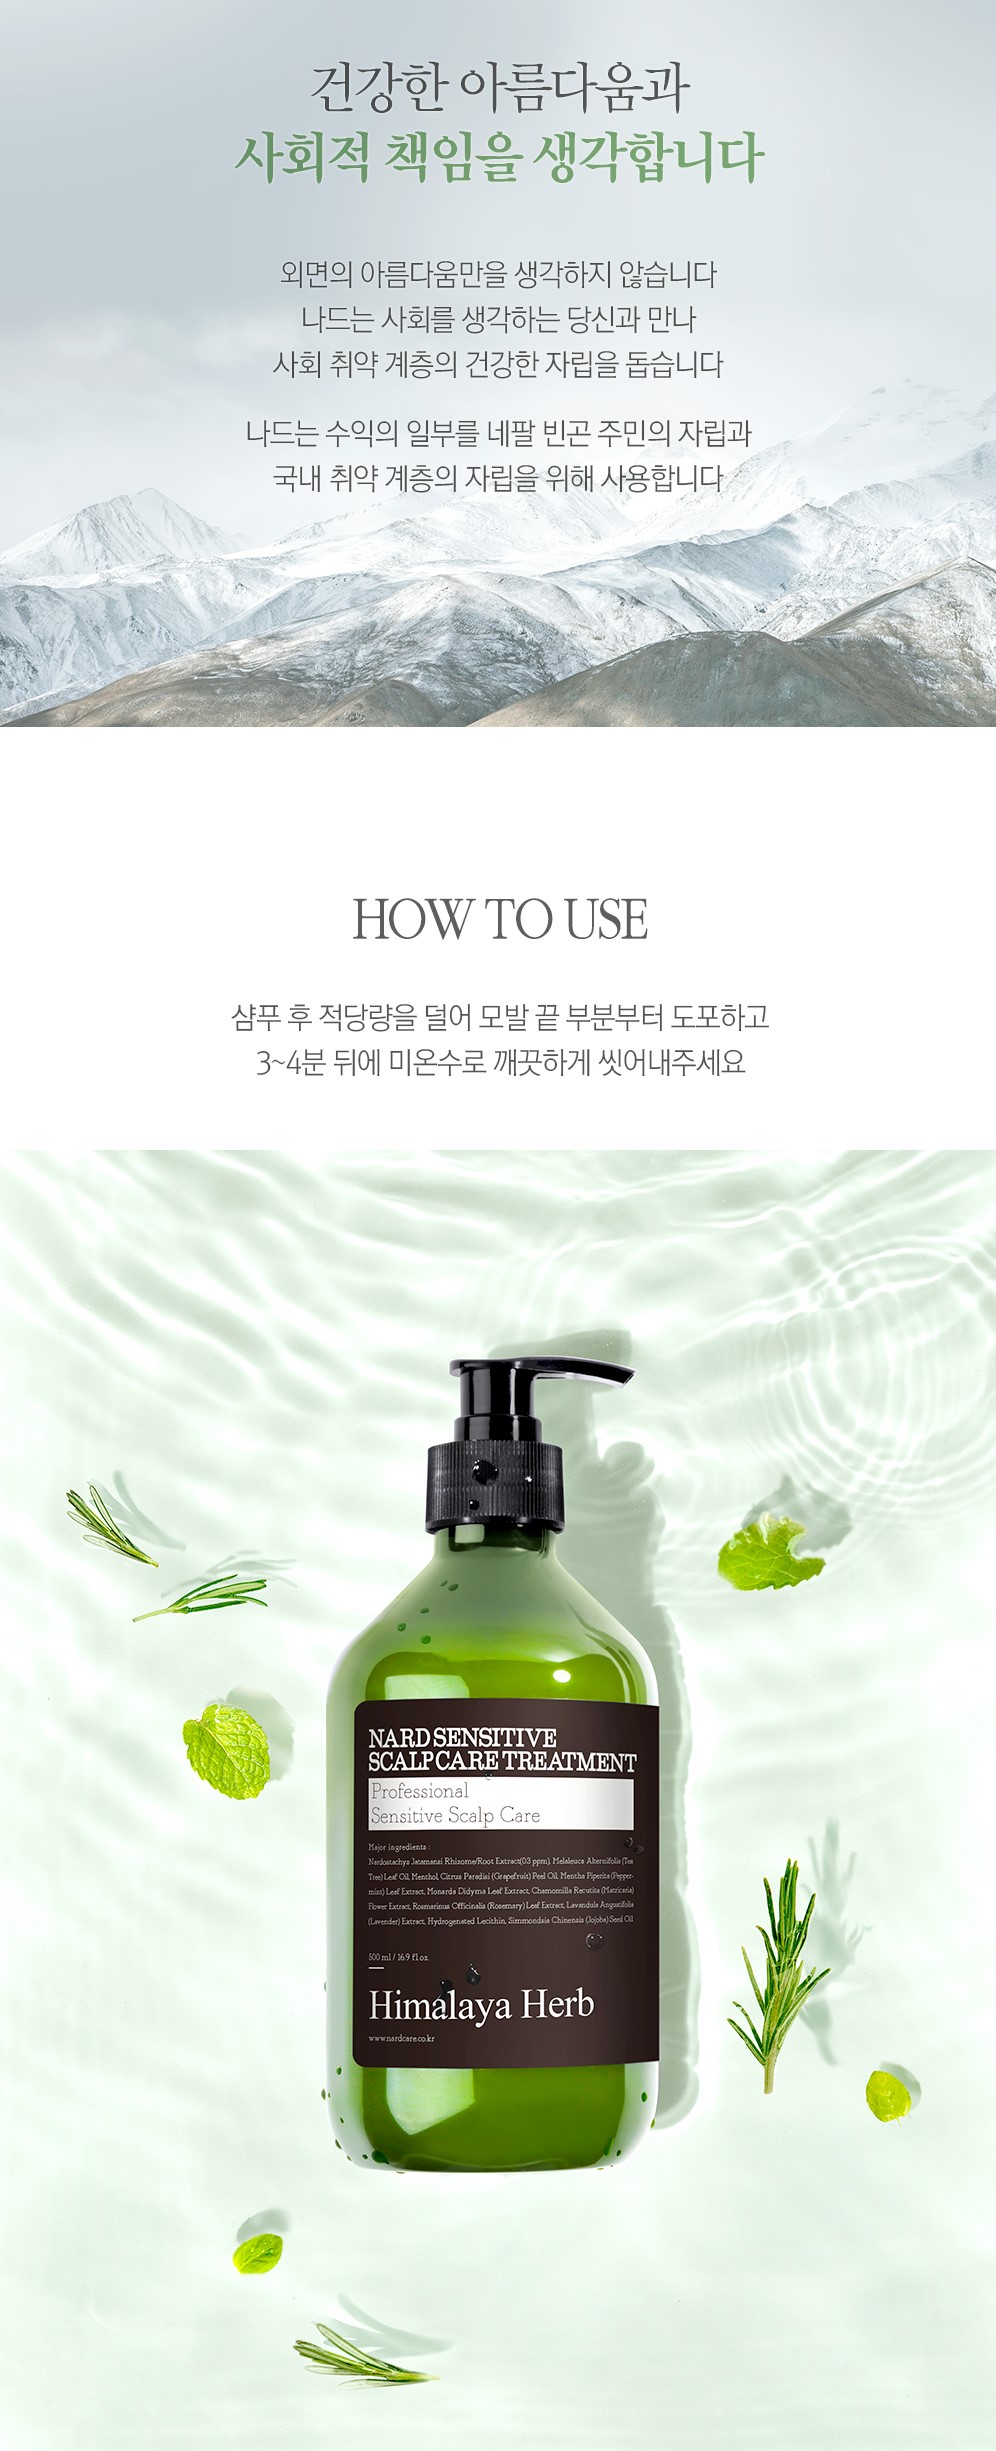 韓國食品-[Nard] 敏感頭皮專用護髮素 500ml